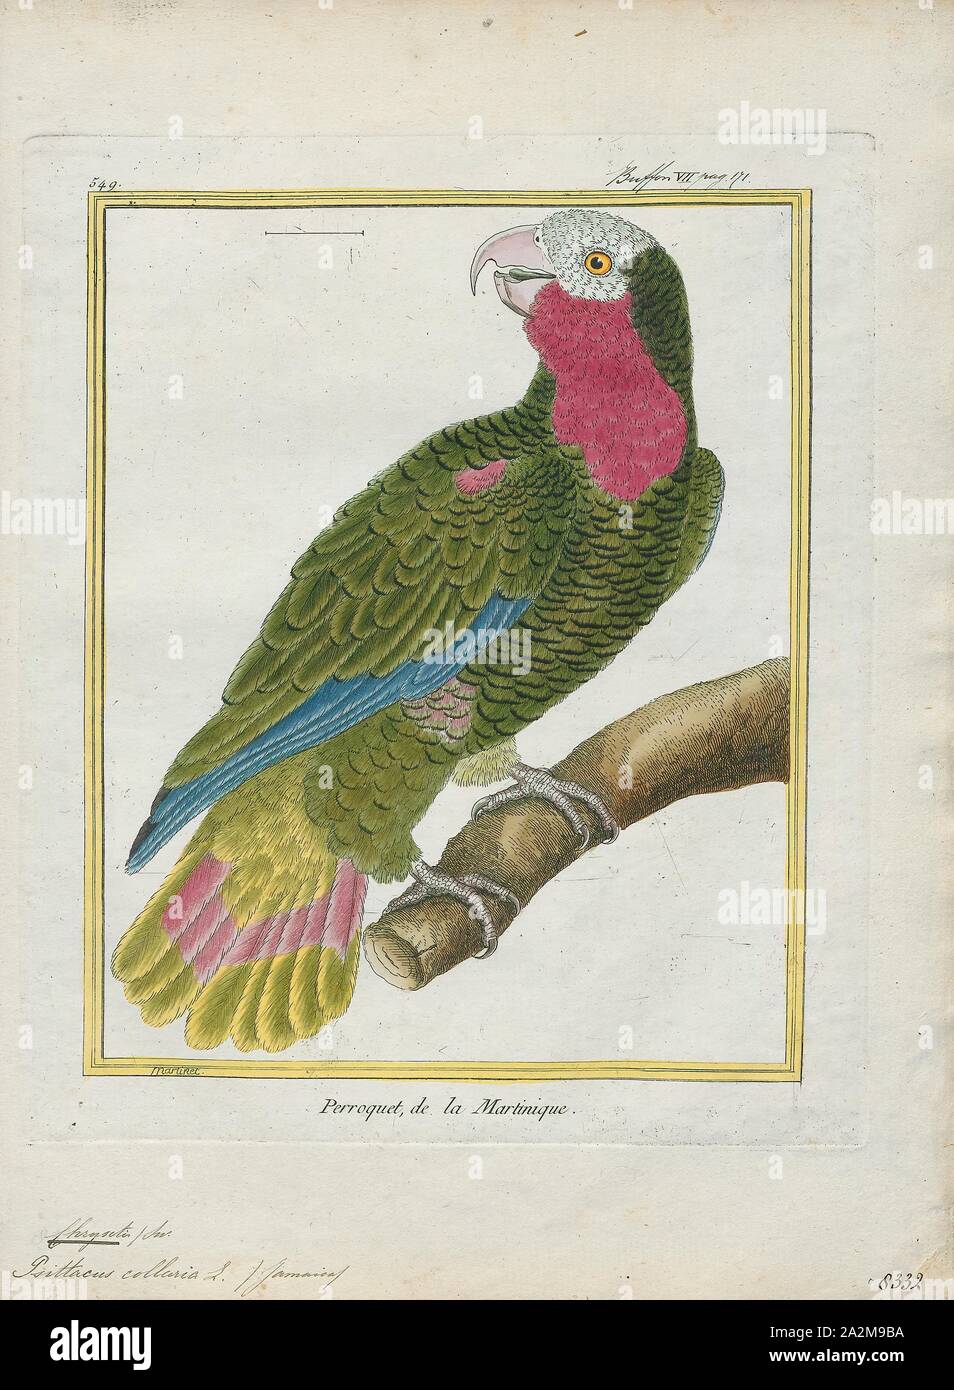 Chrysotis collaria, Stampa, Amazon parrot, Amazon parrot è il nome comune  per un pappagallo del genere Amazona. Queste sono di medie dimensioni  pappagalli nativo per il nuovo mondo che spaziano dal Sud